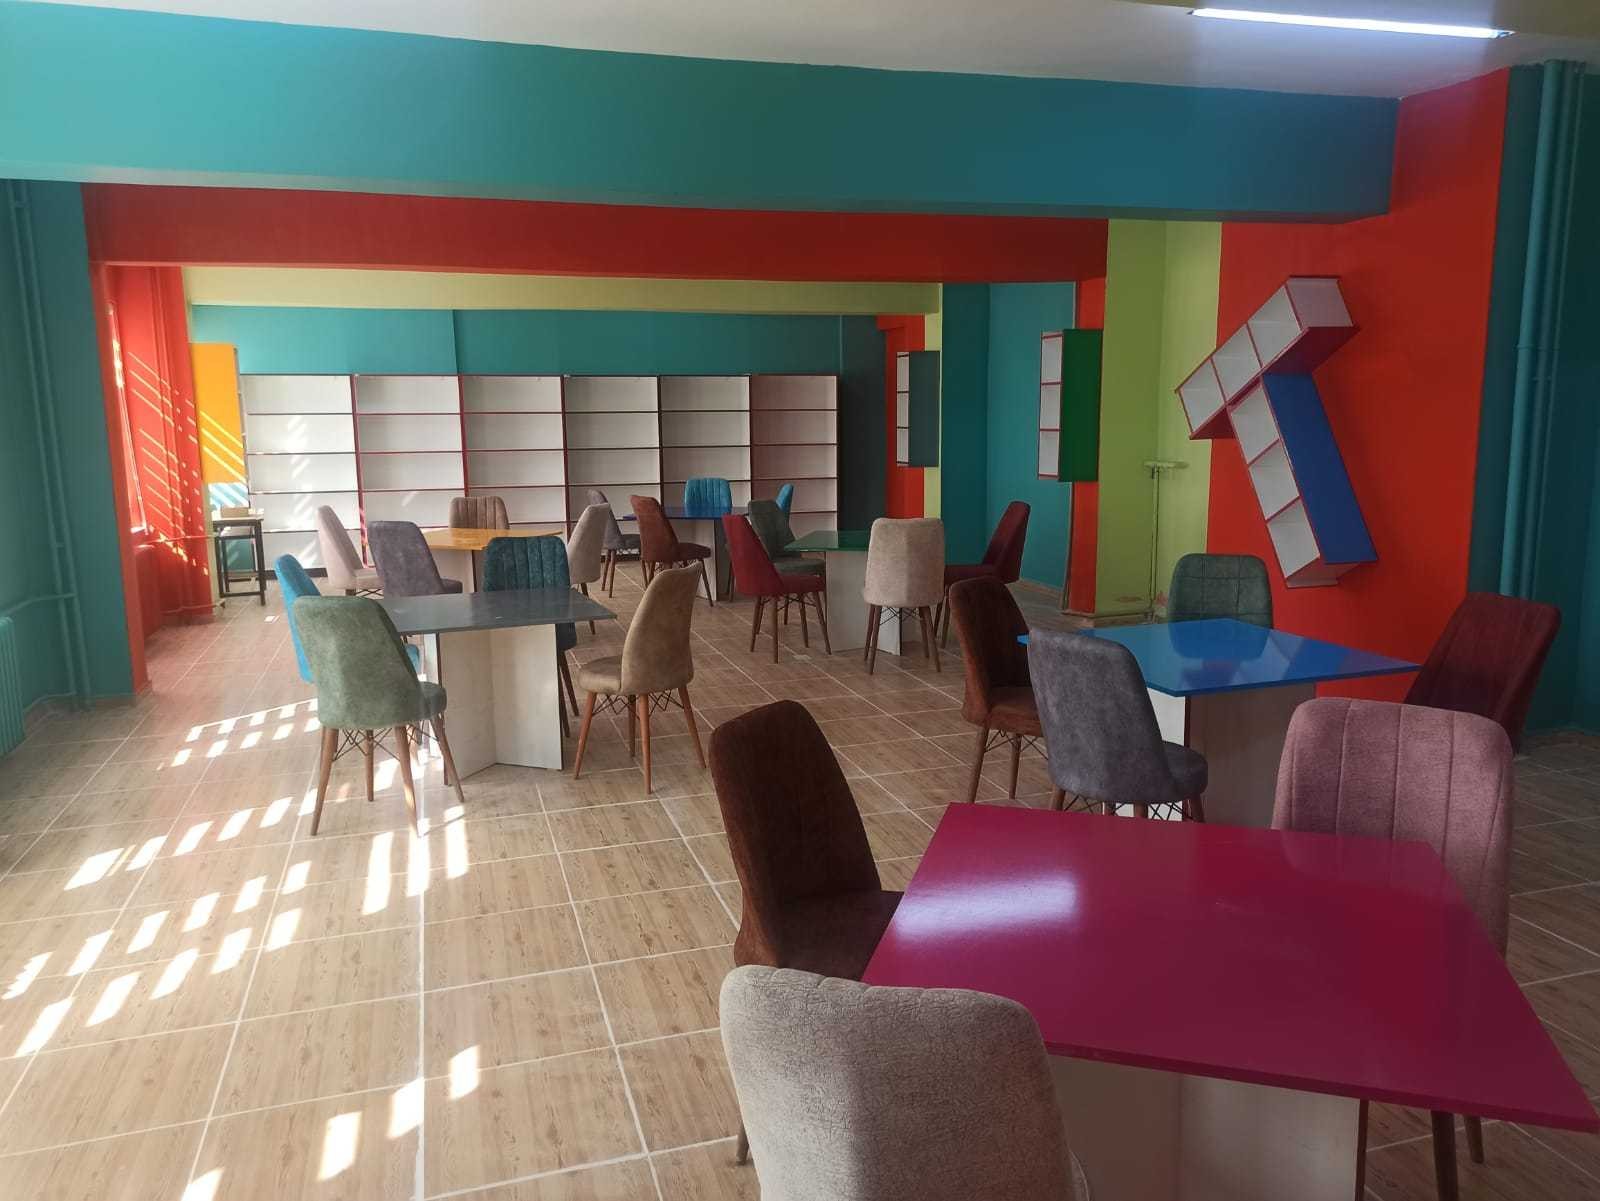 Köy okulu yeni kütüphanesine kitap desteği bekliyor #sirnak